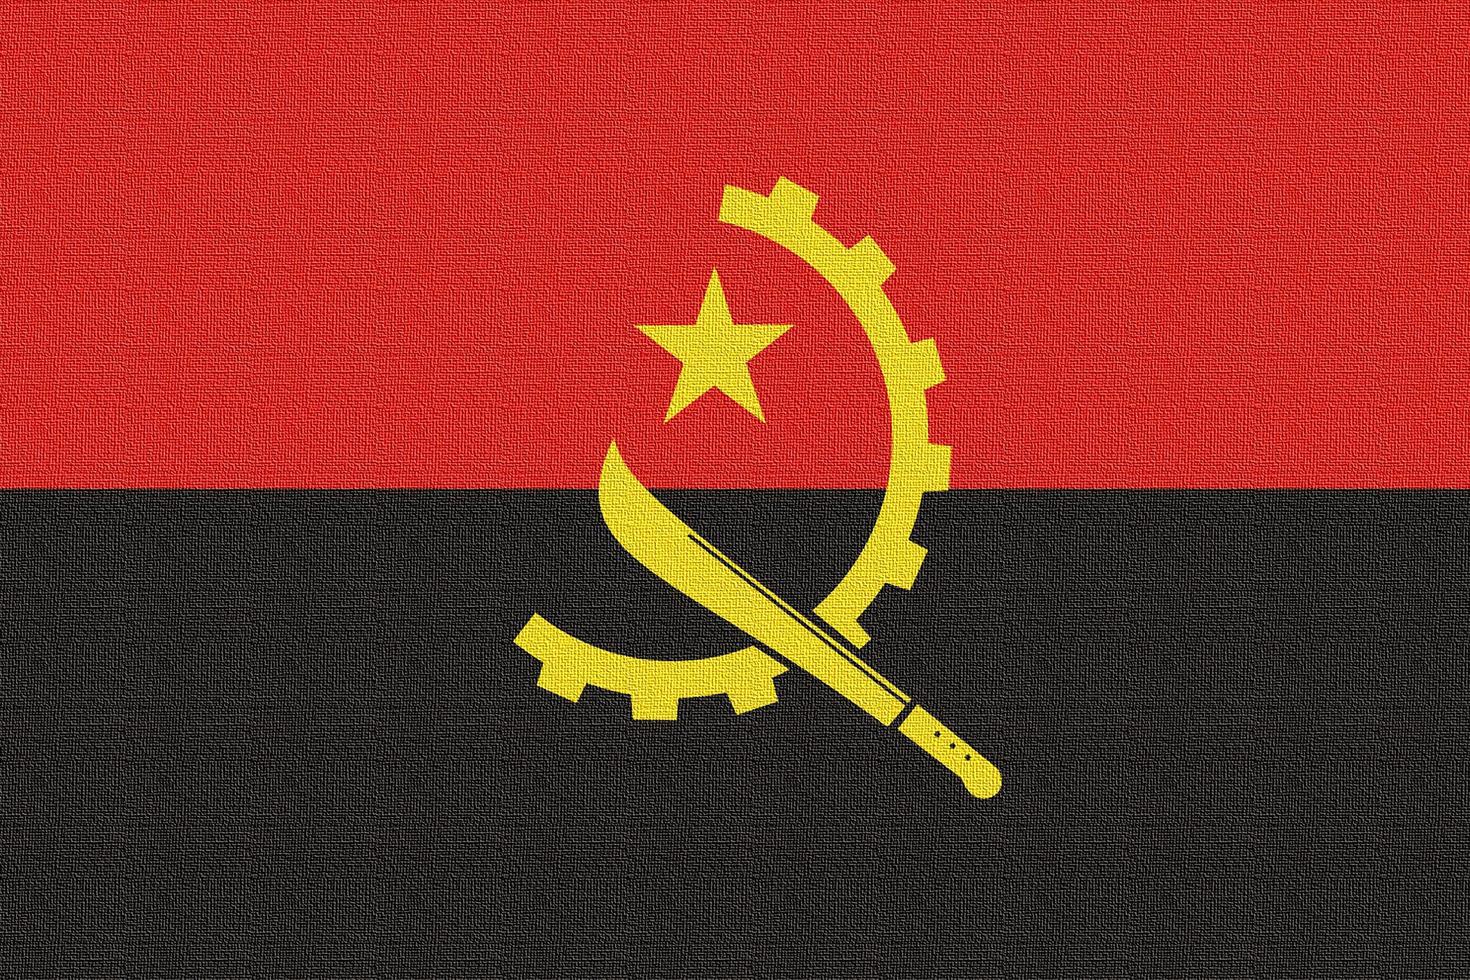 illustration av angolas nationella flagga foto